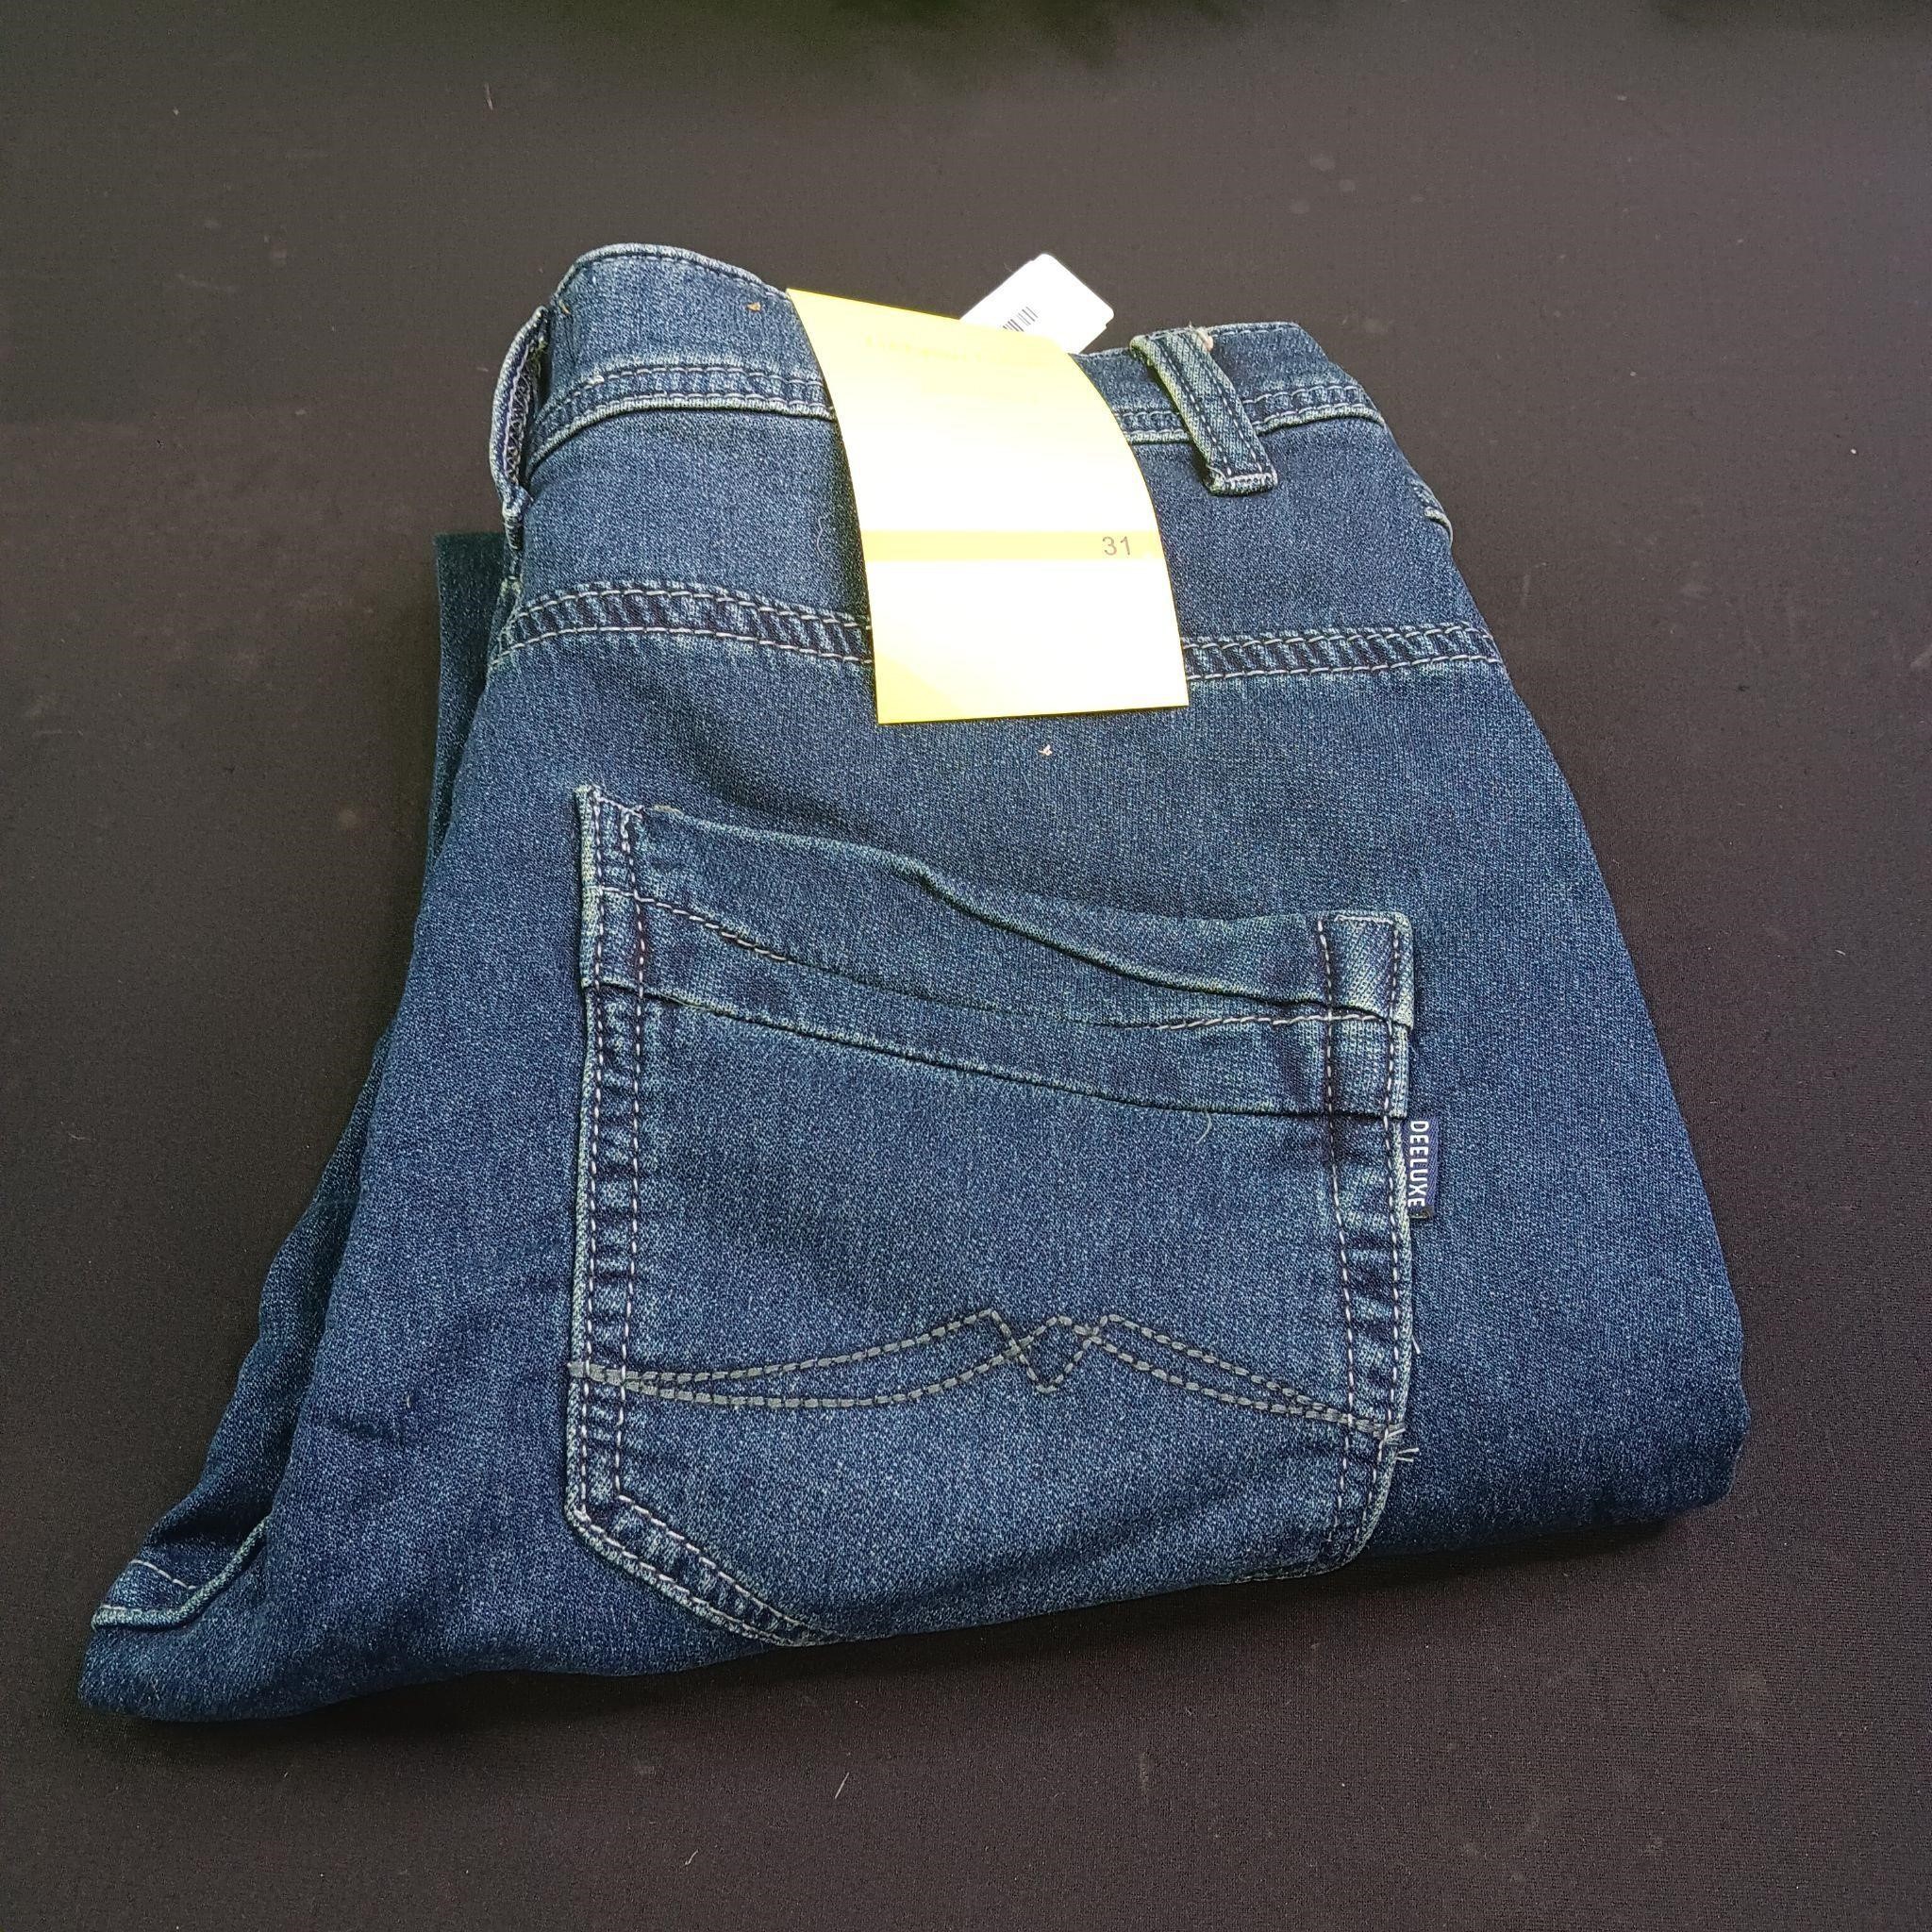 31 - Relaxed Straight Jean For men Denim Pants